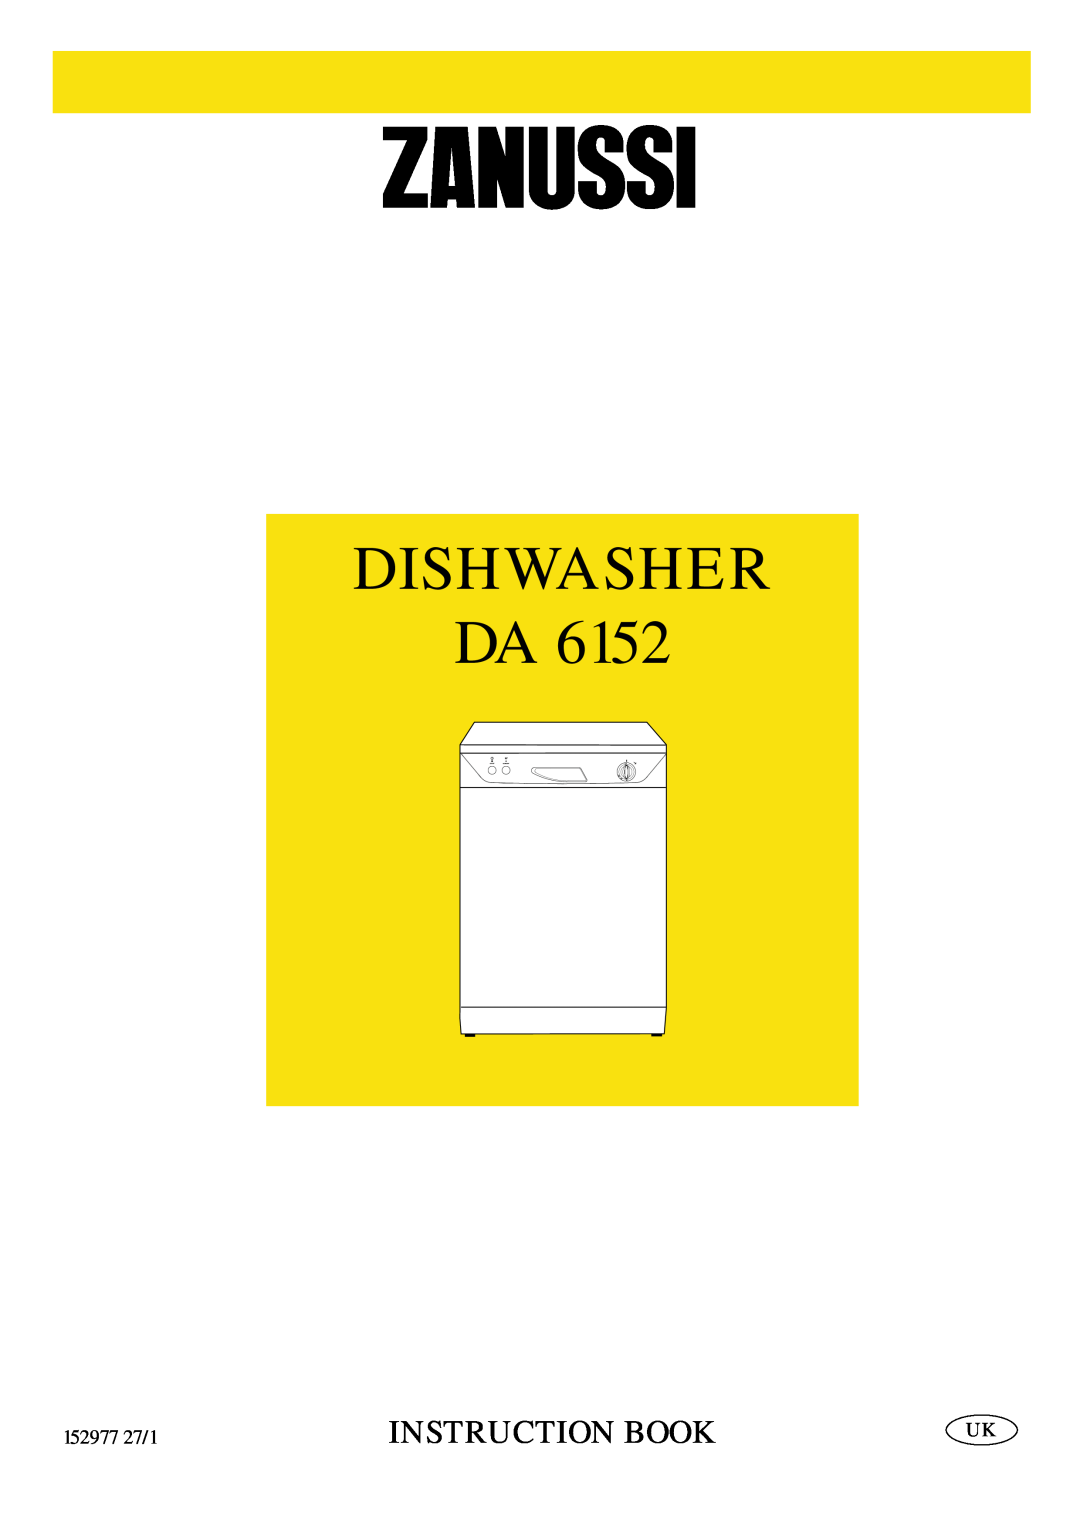 Zanussi DA 6152 manual Dishwasher Da, Instruction Book, 152977 27/1 